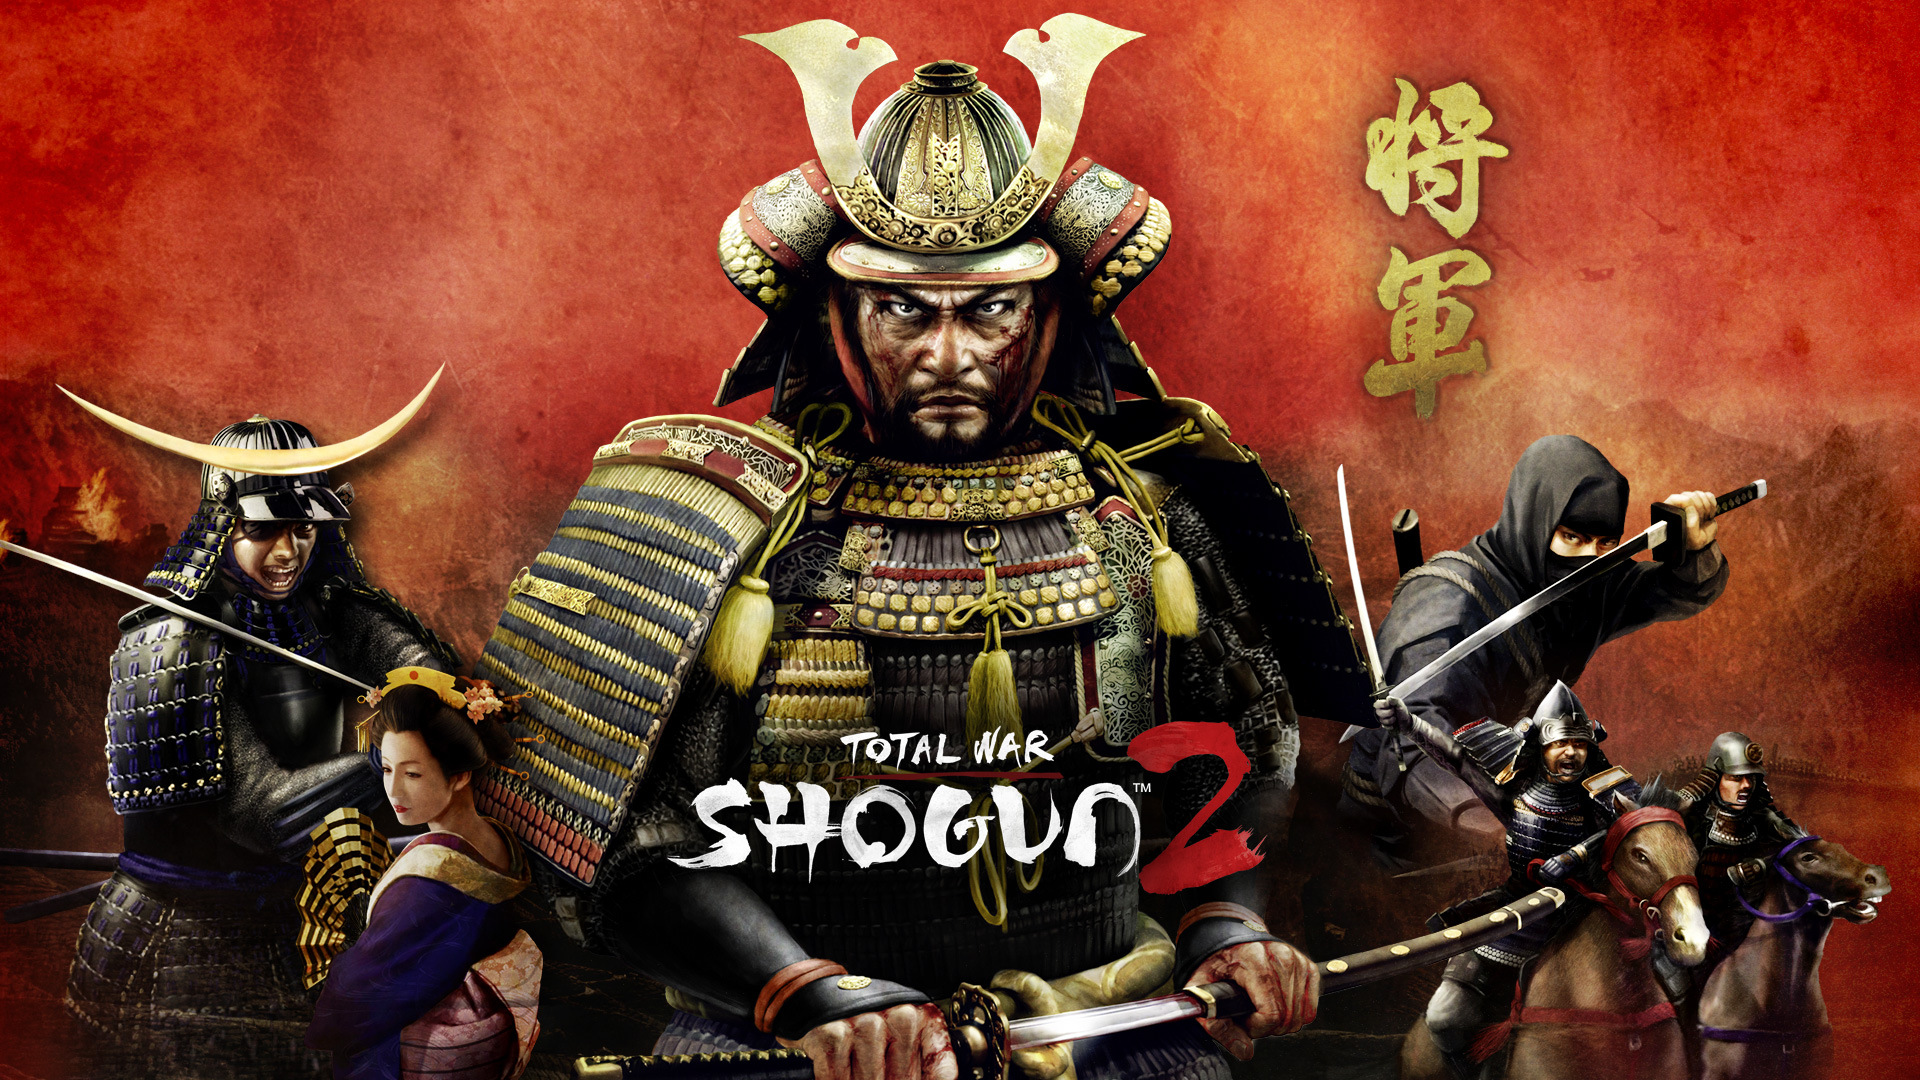 [16+] Что ты такое? Total War: Shogun 2